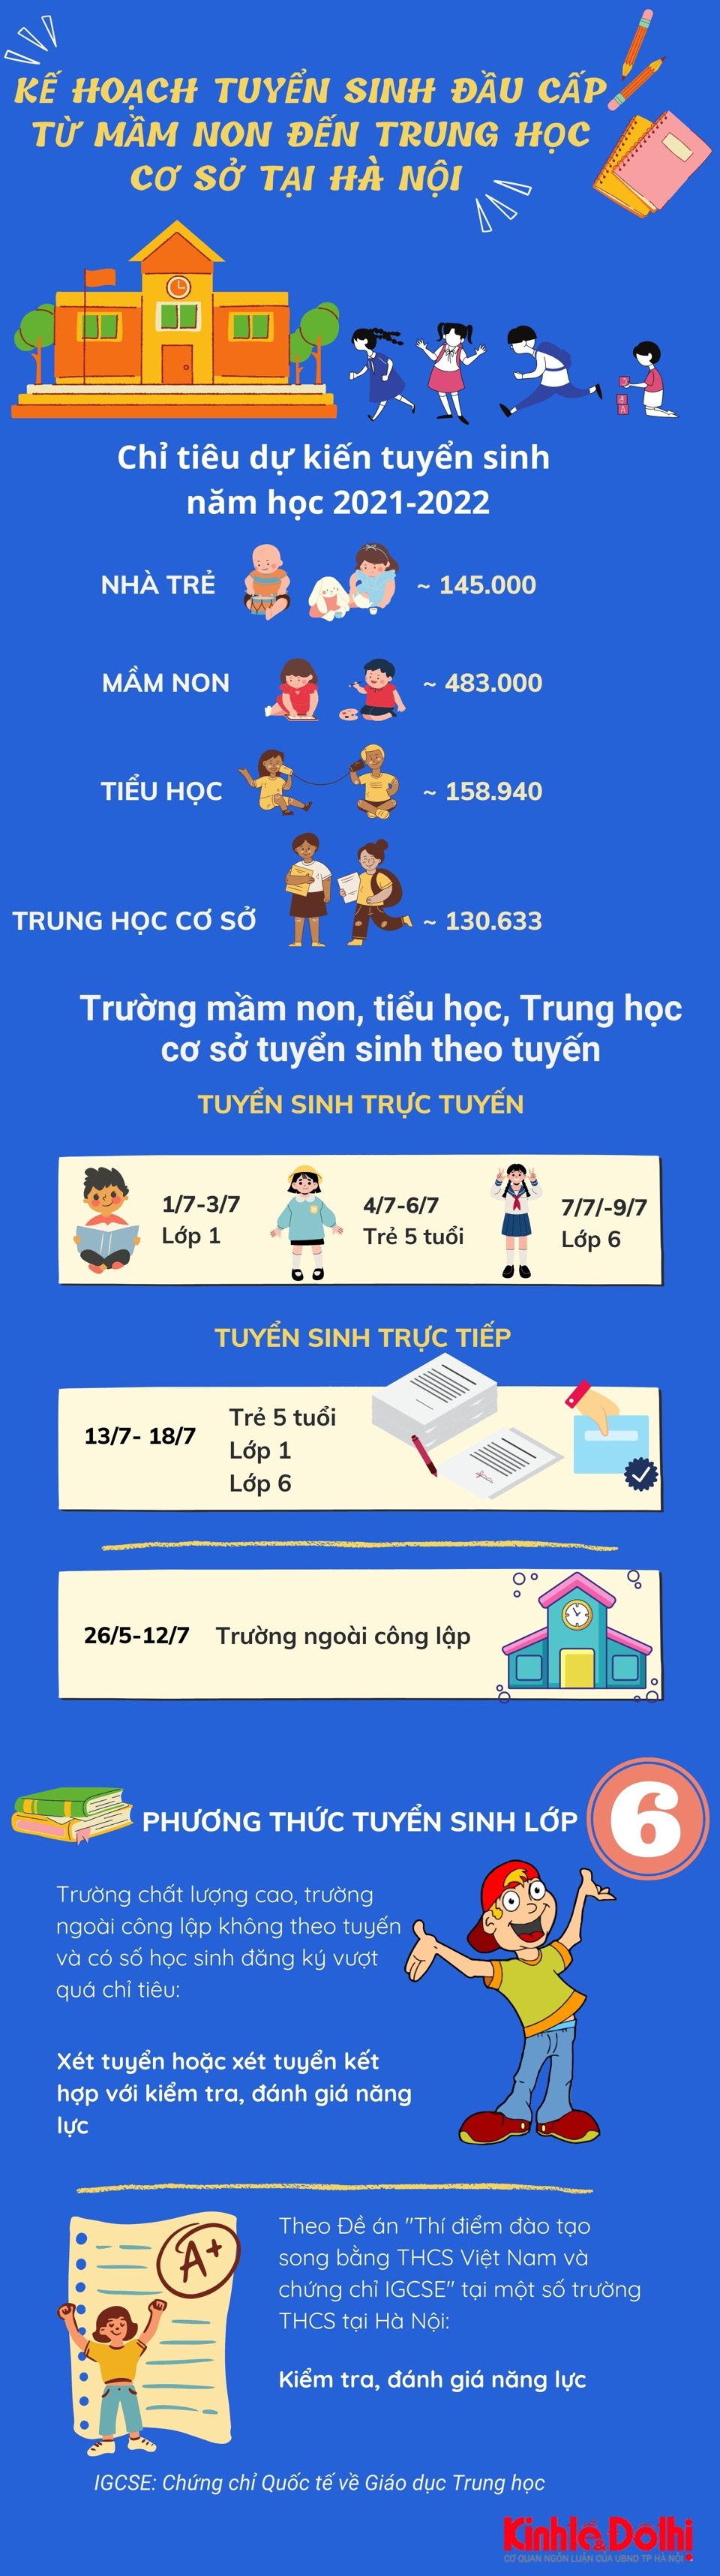 [Infographic] Chi tiết kế hoạch tuyển sinh đầu cấp từ mầm non đến THCS tại Hà Nội - Ảnh 1